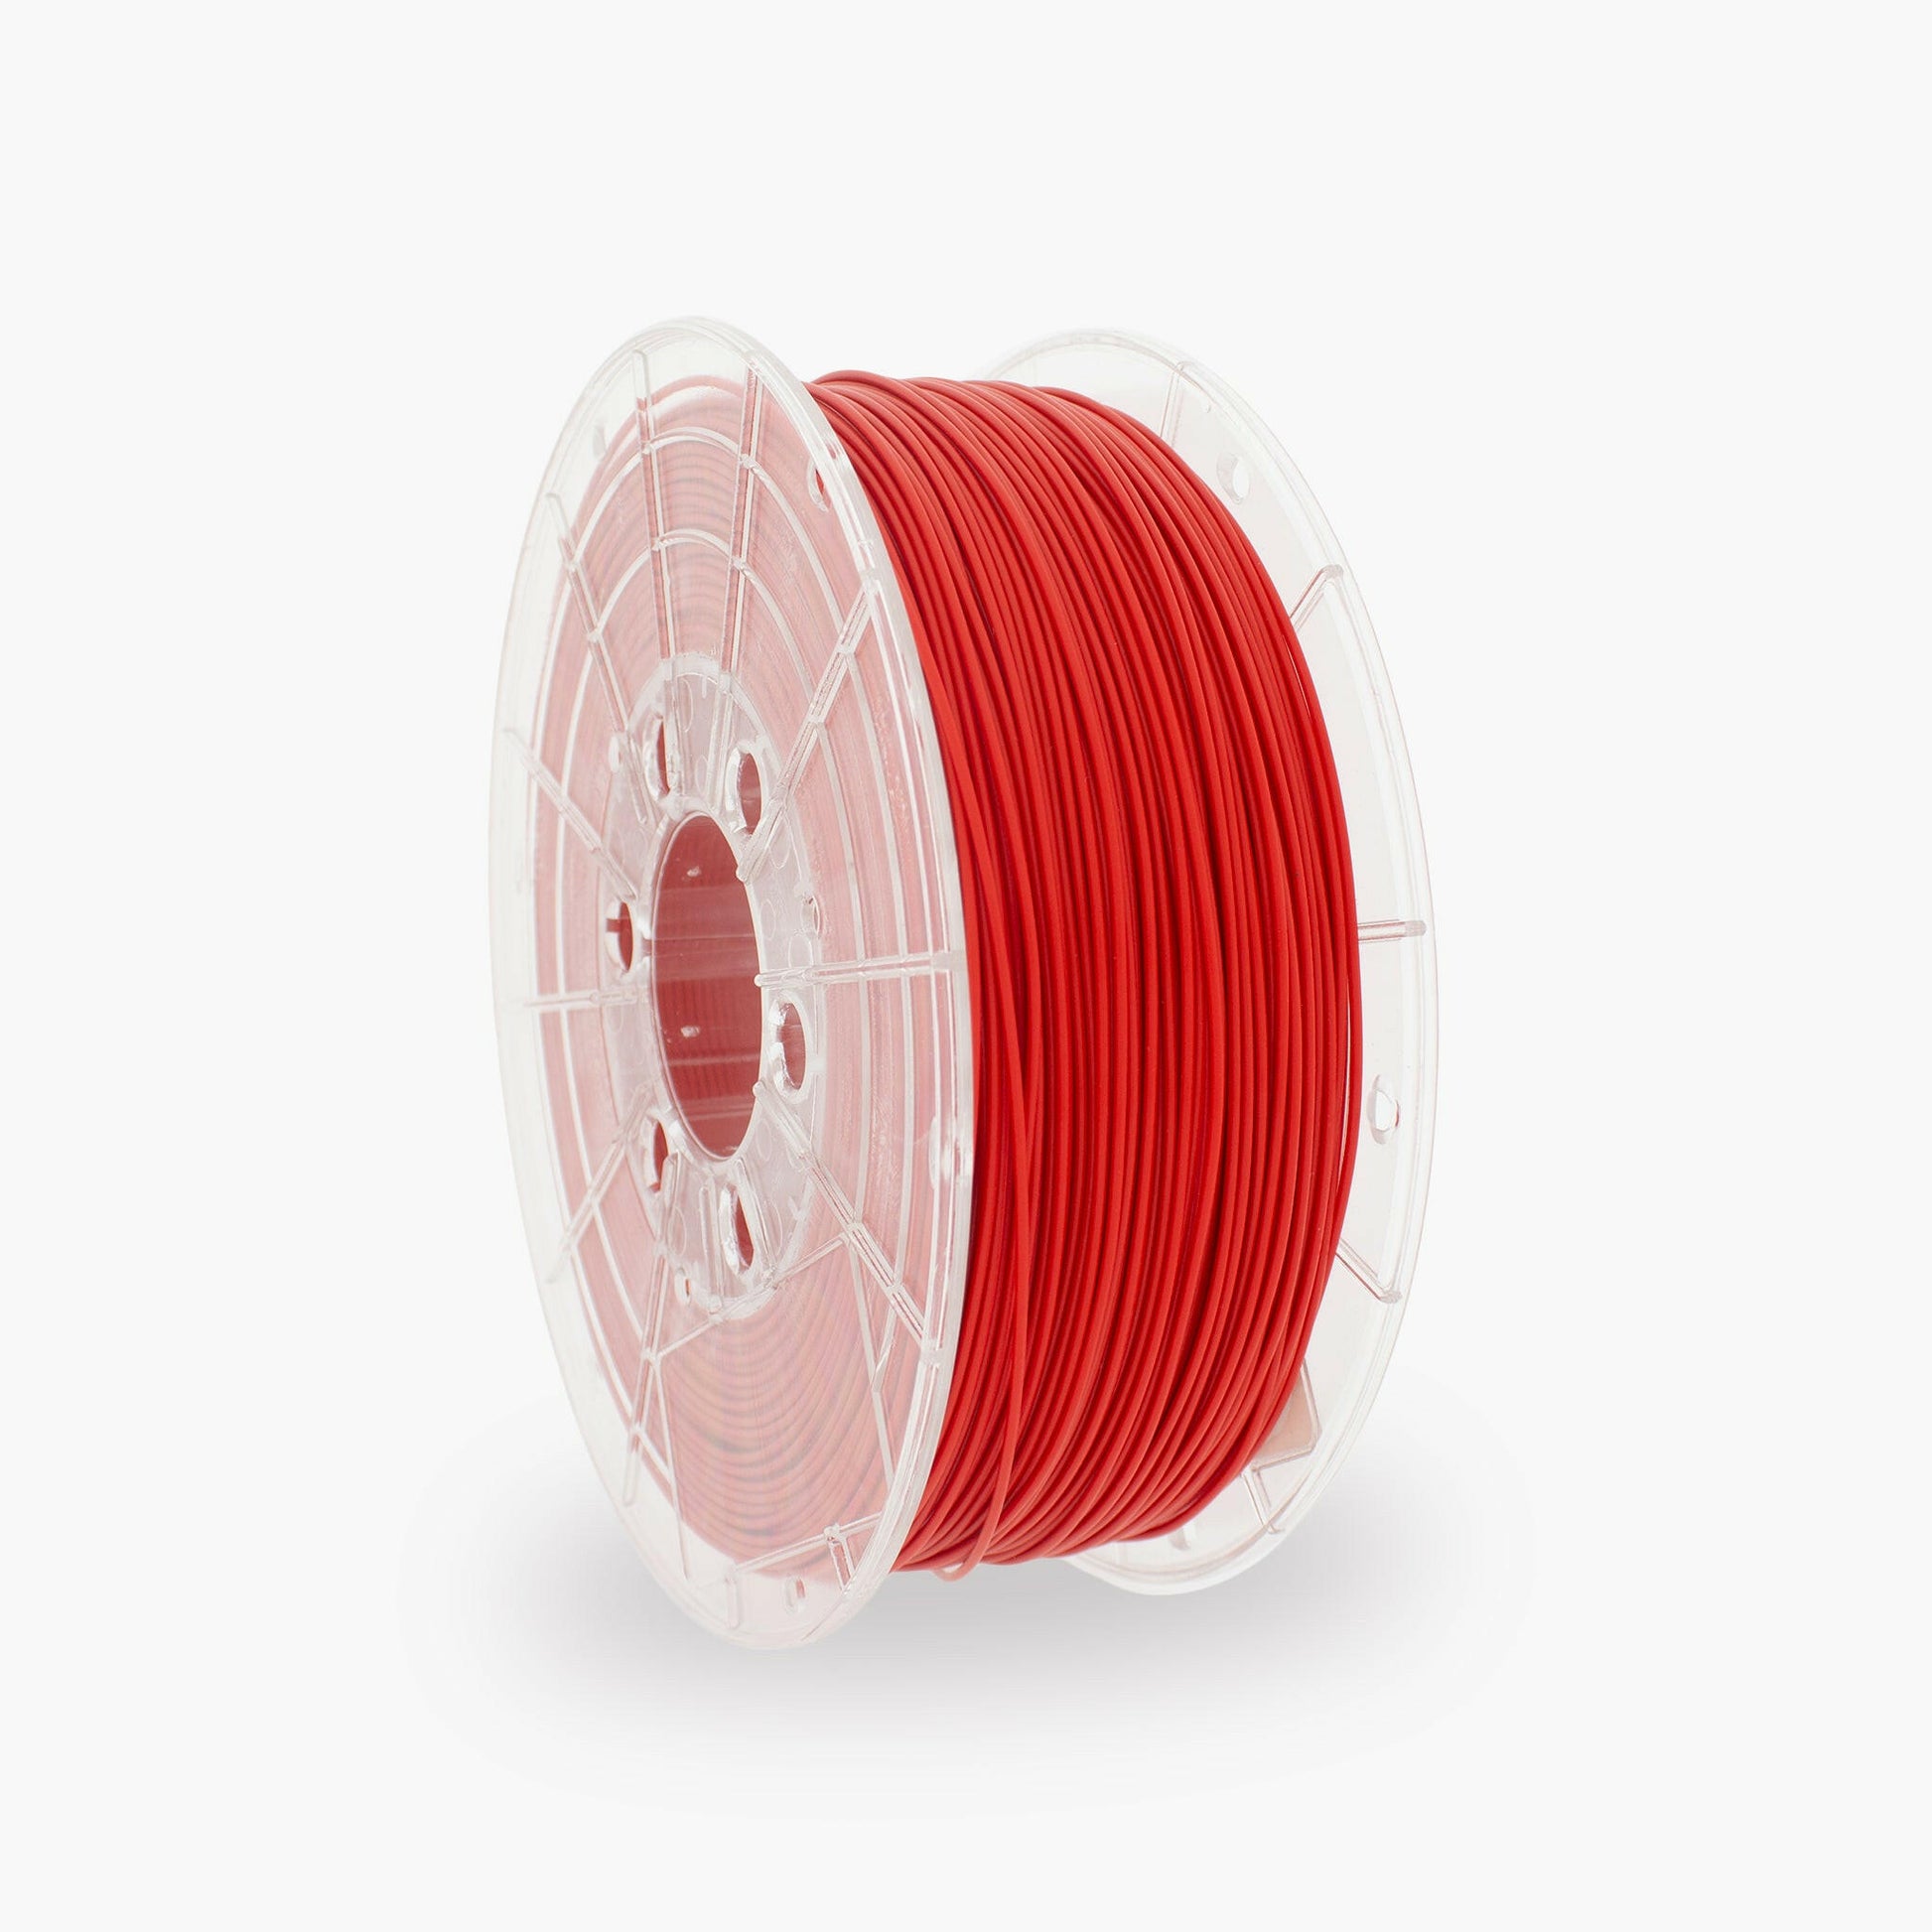 Filament 1KG